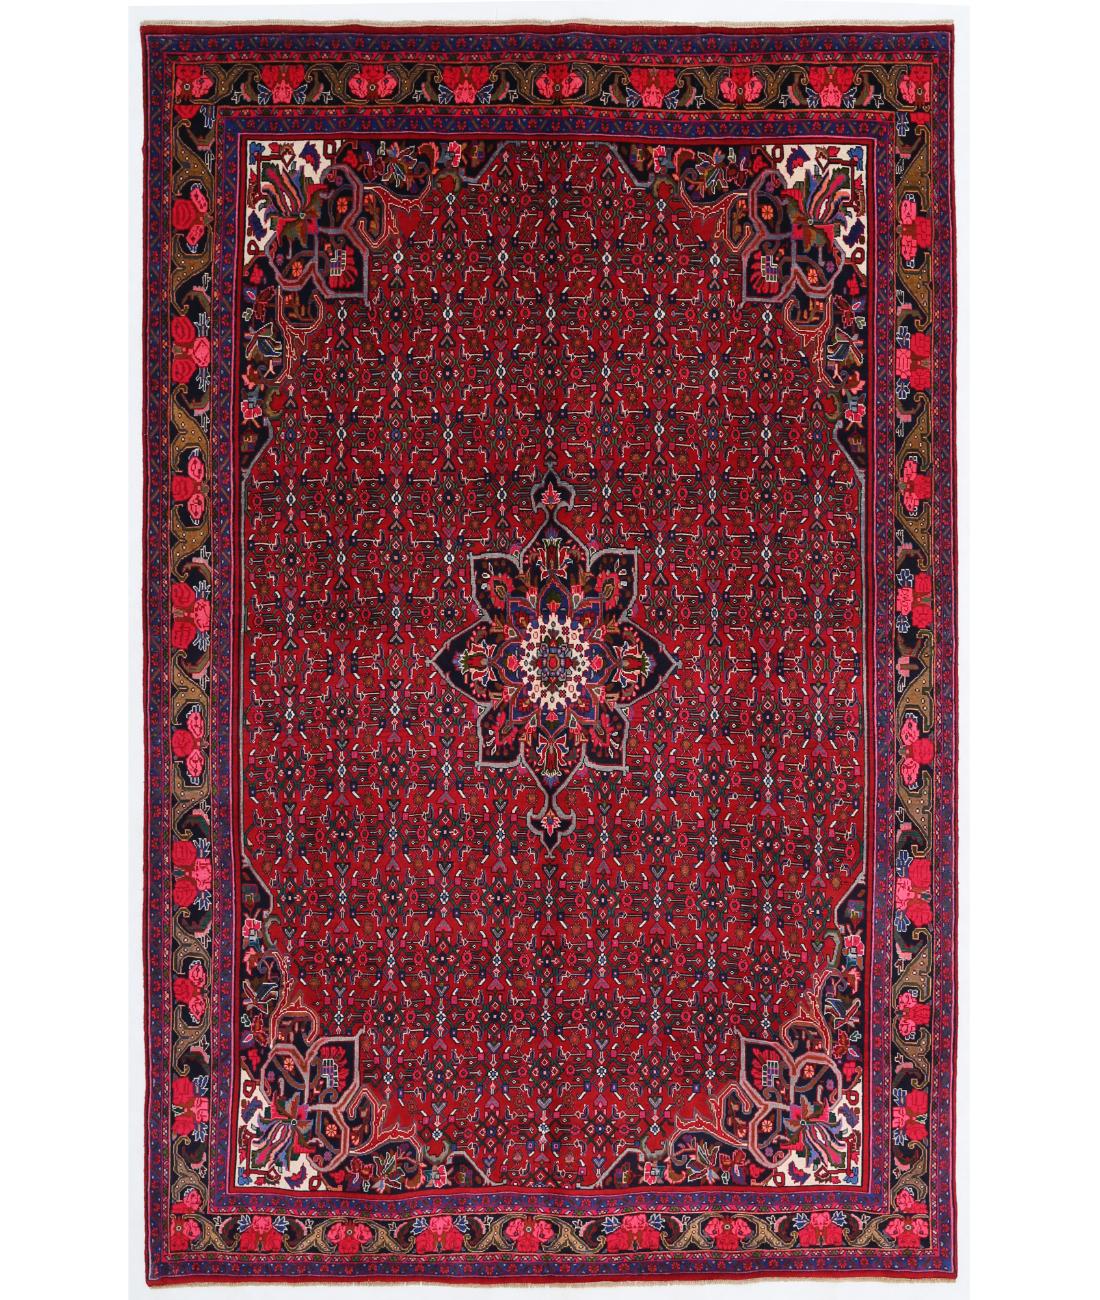 Hand Knotted Persian Bijar Wool Rug - 6'10'' x 10'8'' 6' 10" X 10' 8" ( 208 X 325 ) / Red / Blue